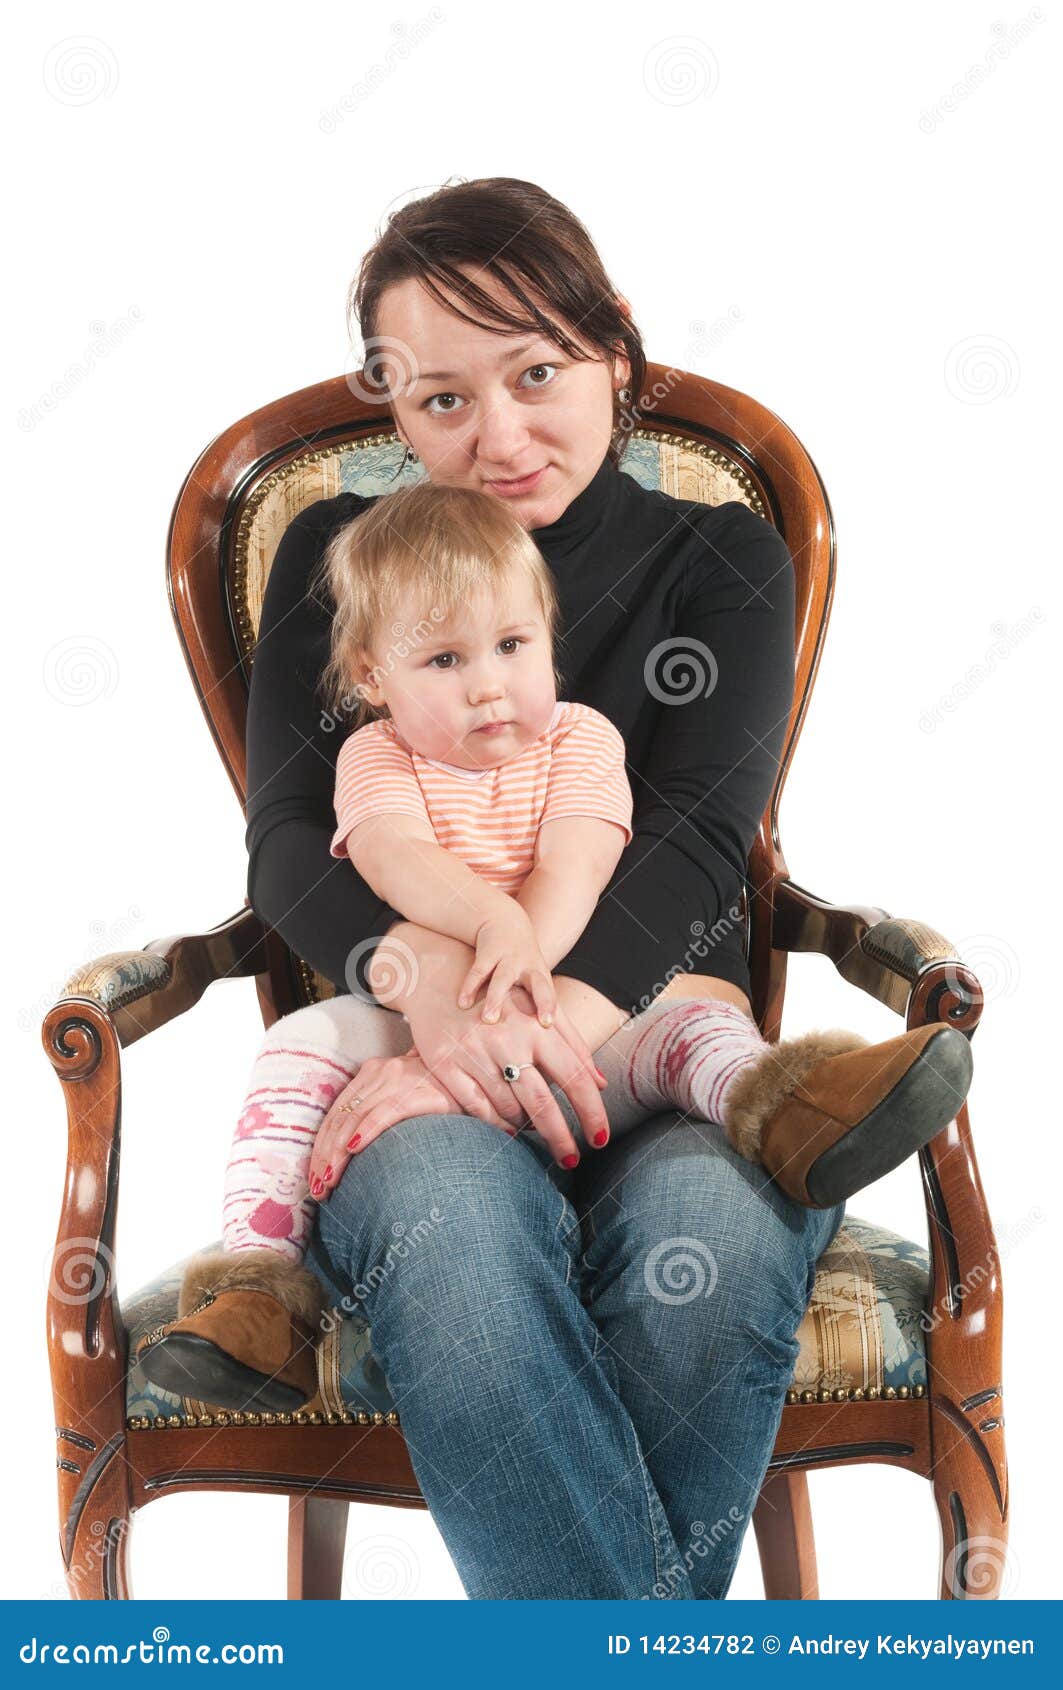 Сижу у мамы на коленях. Женщина с ребенком сидит. Малыш сидит на коленках. Ребенок сидит на коленях. Женщина сидит с ребенком на коленях.